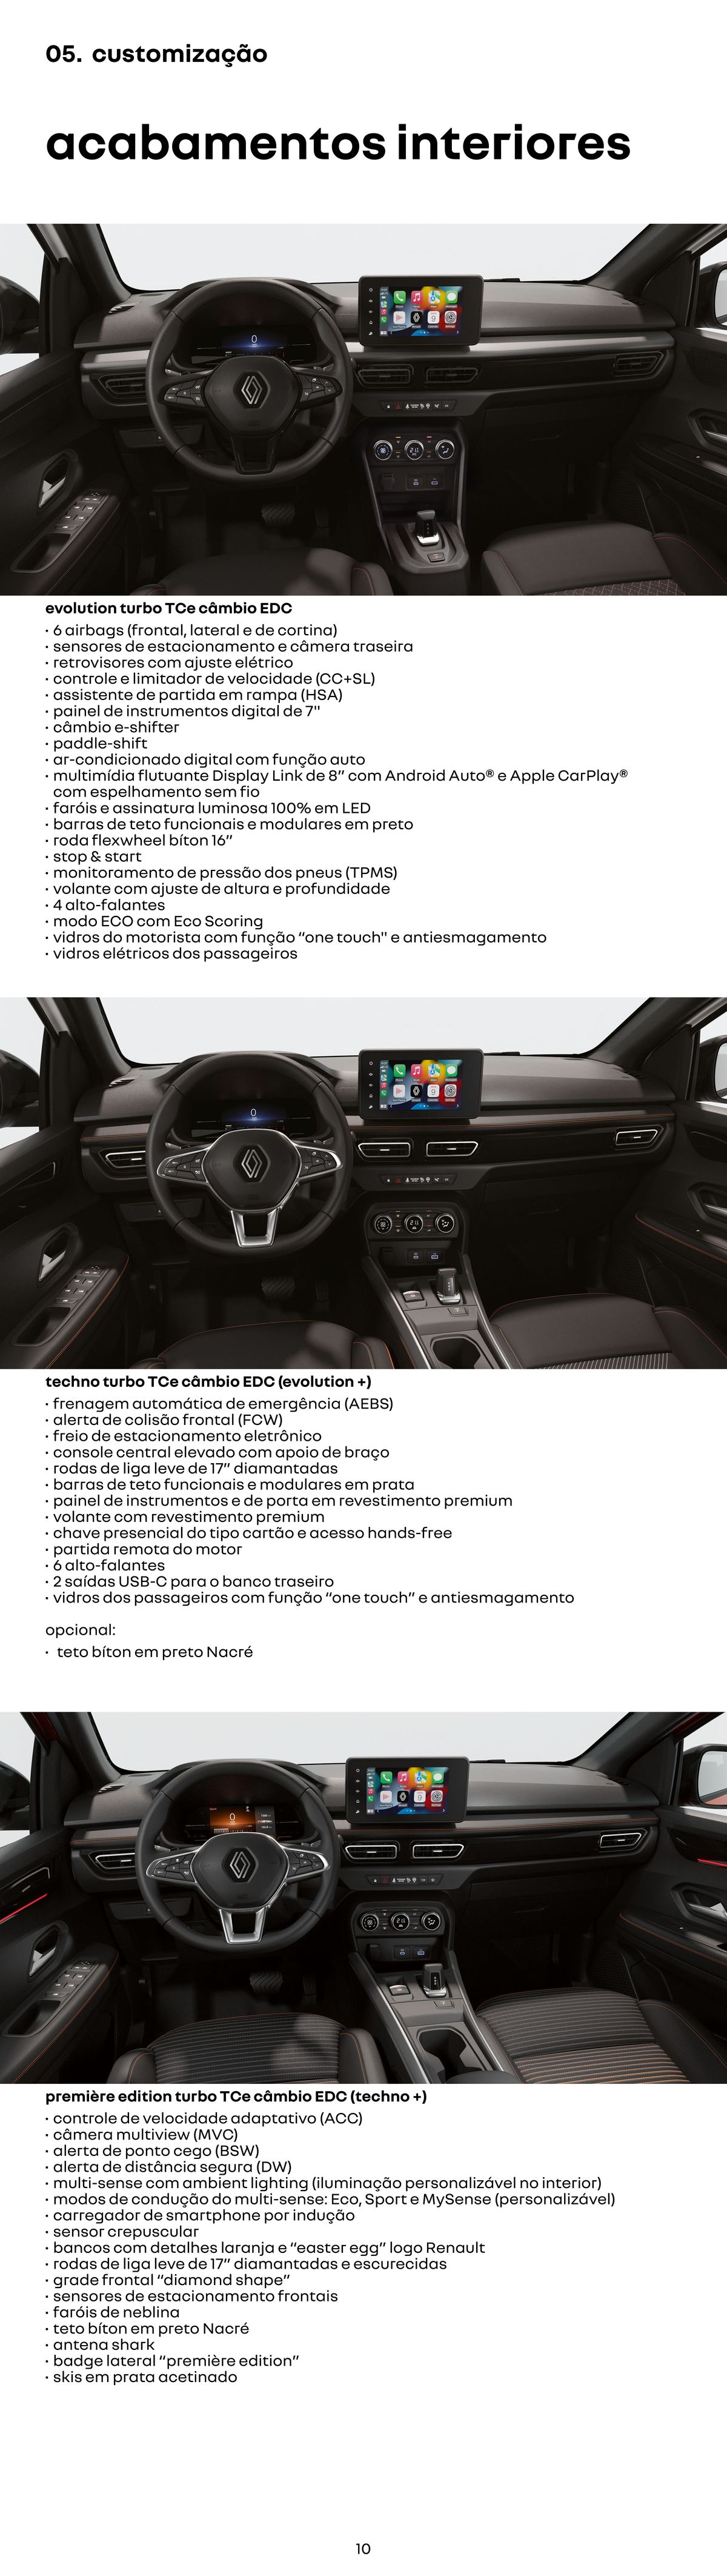 Ofertas de customização para Renault Showrooms de automóveis